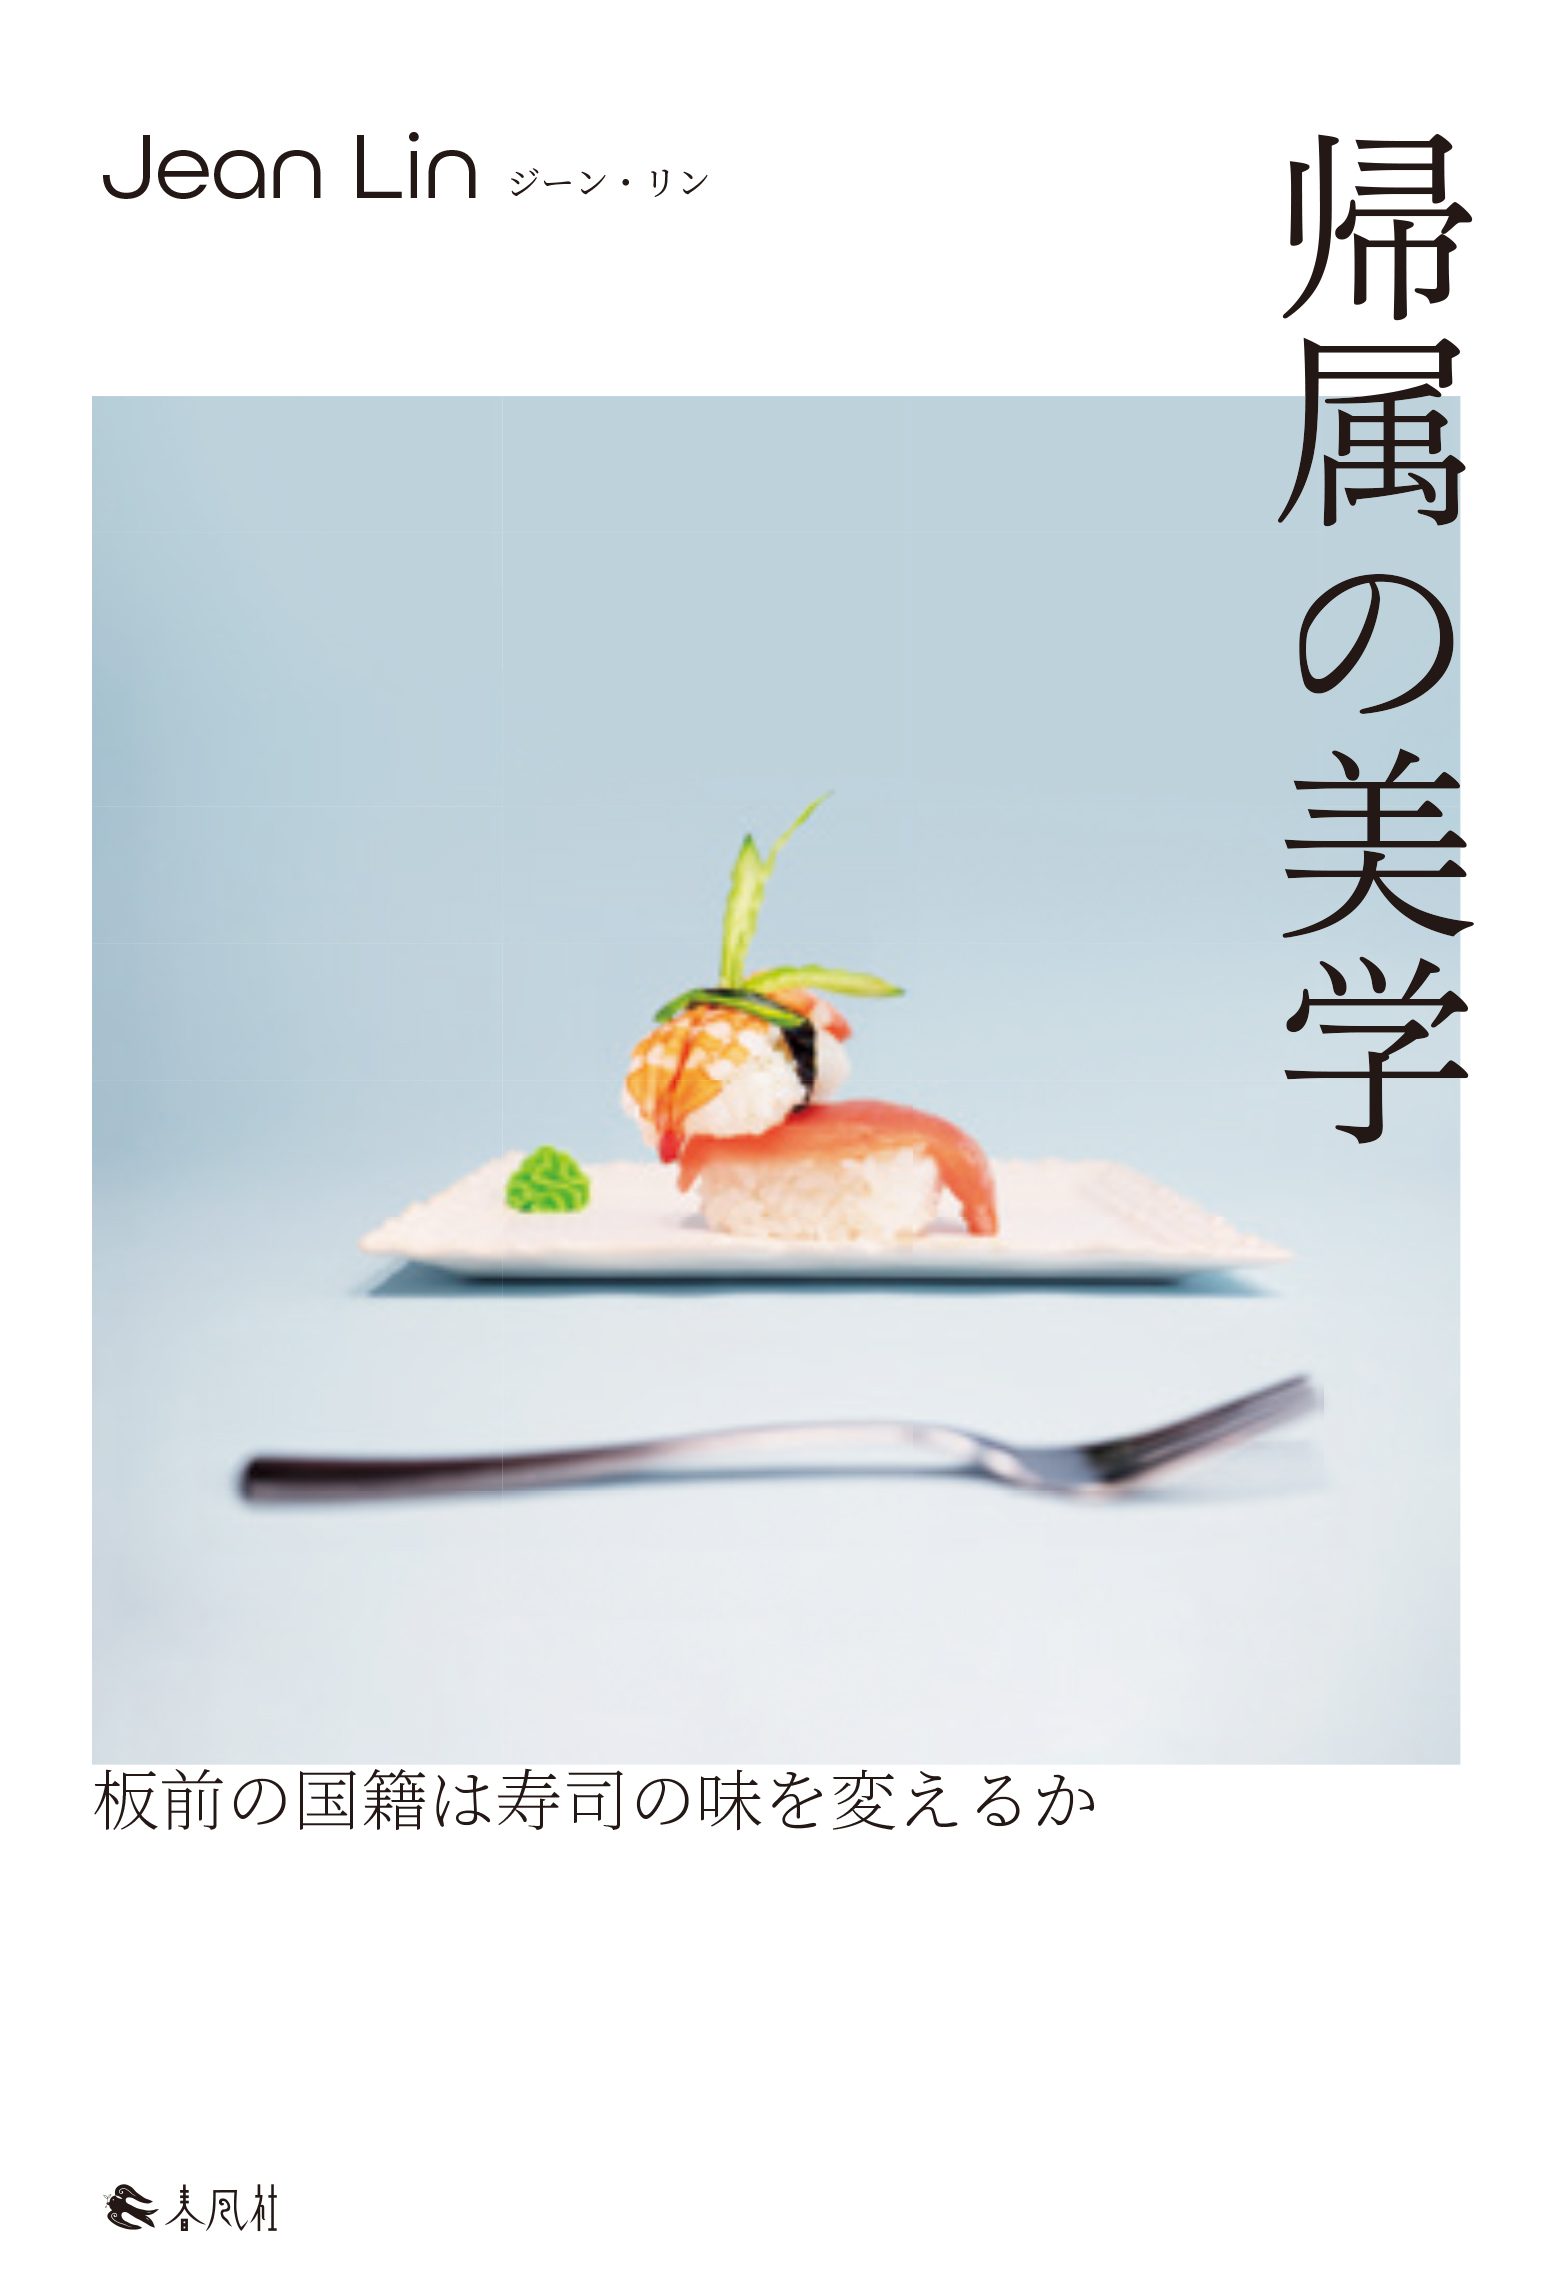 白い表紙、寿司のイラスト